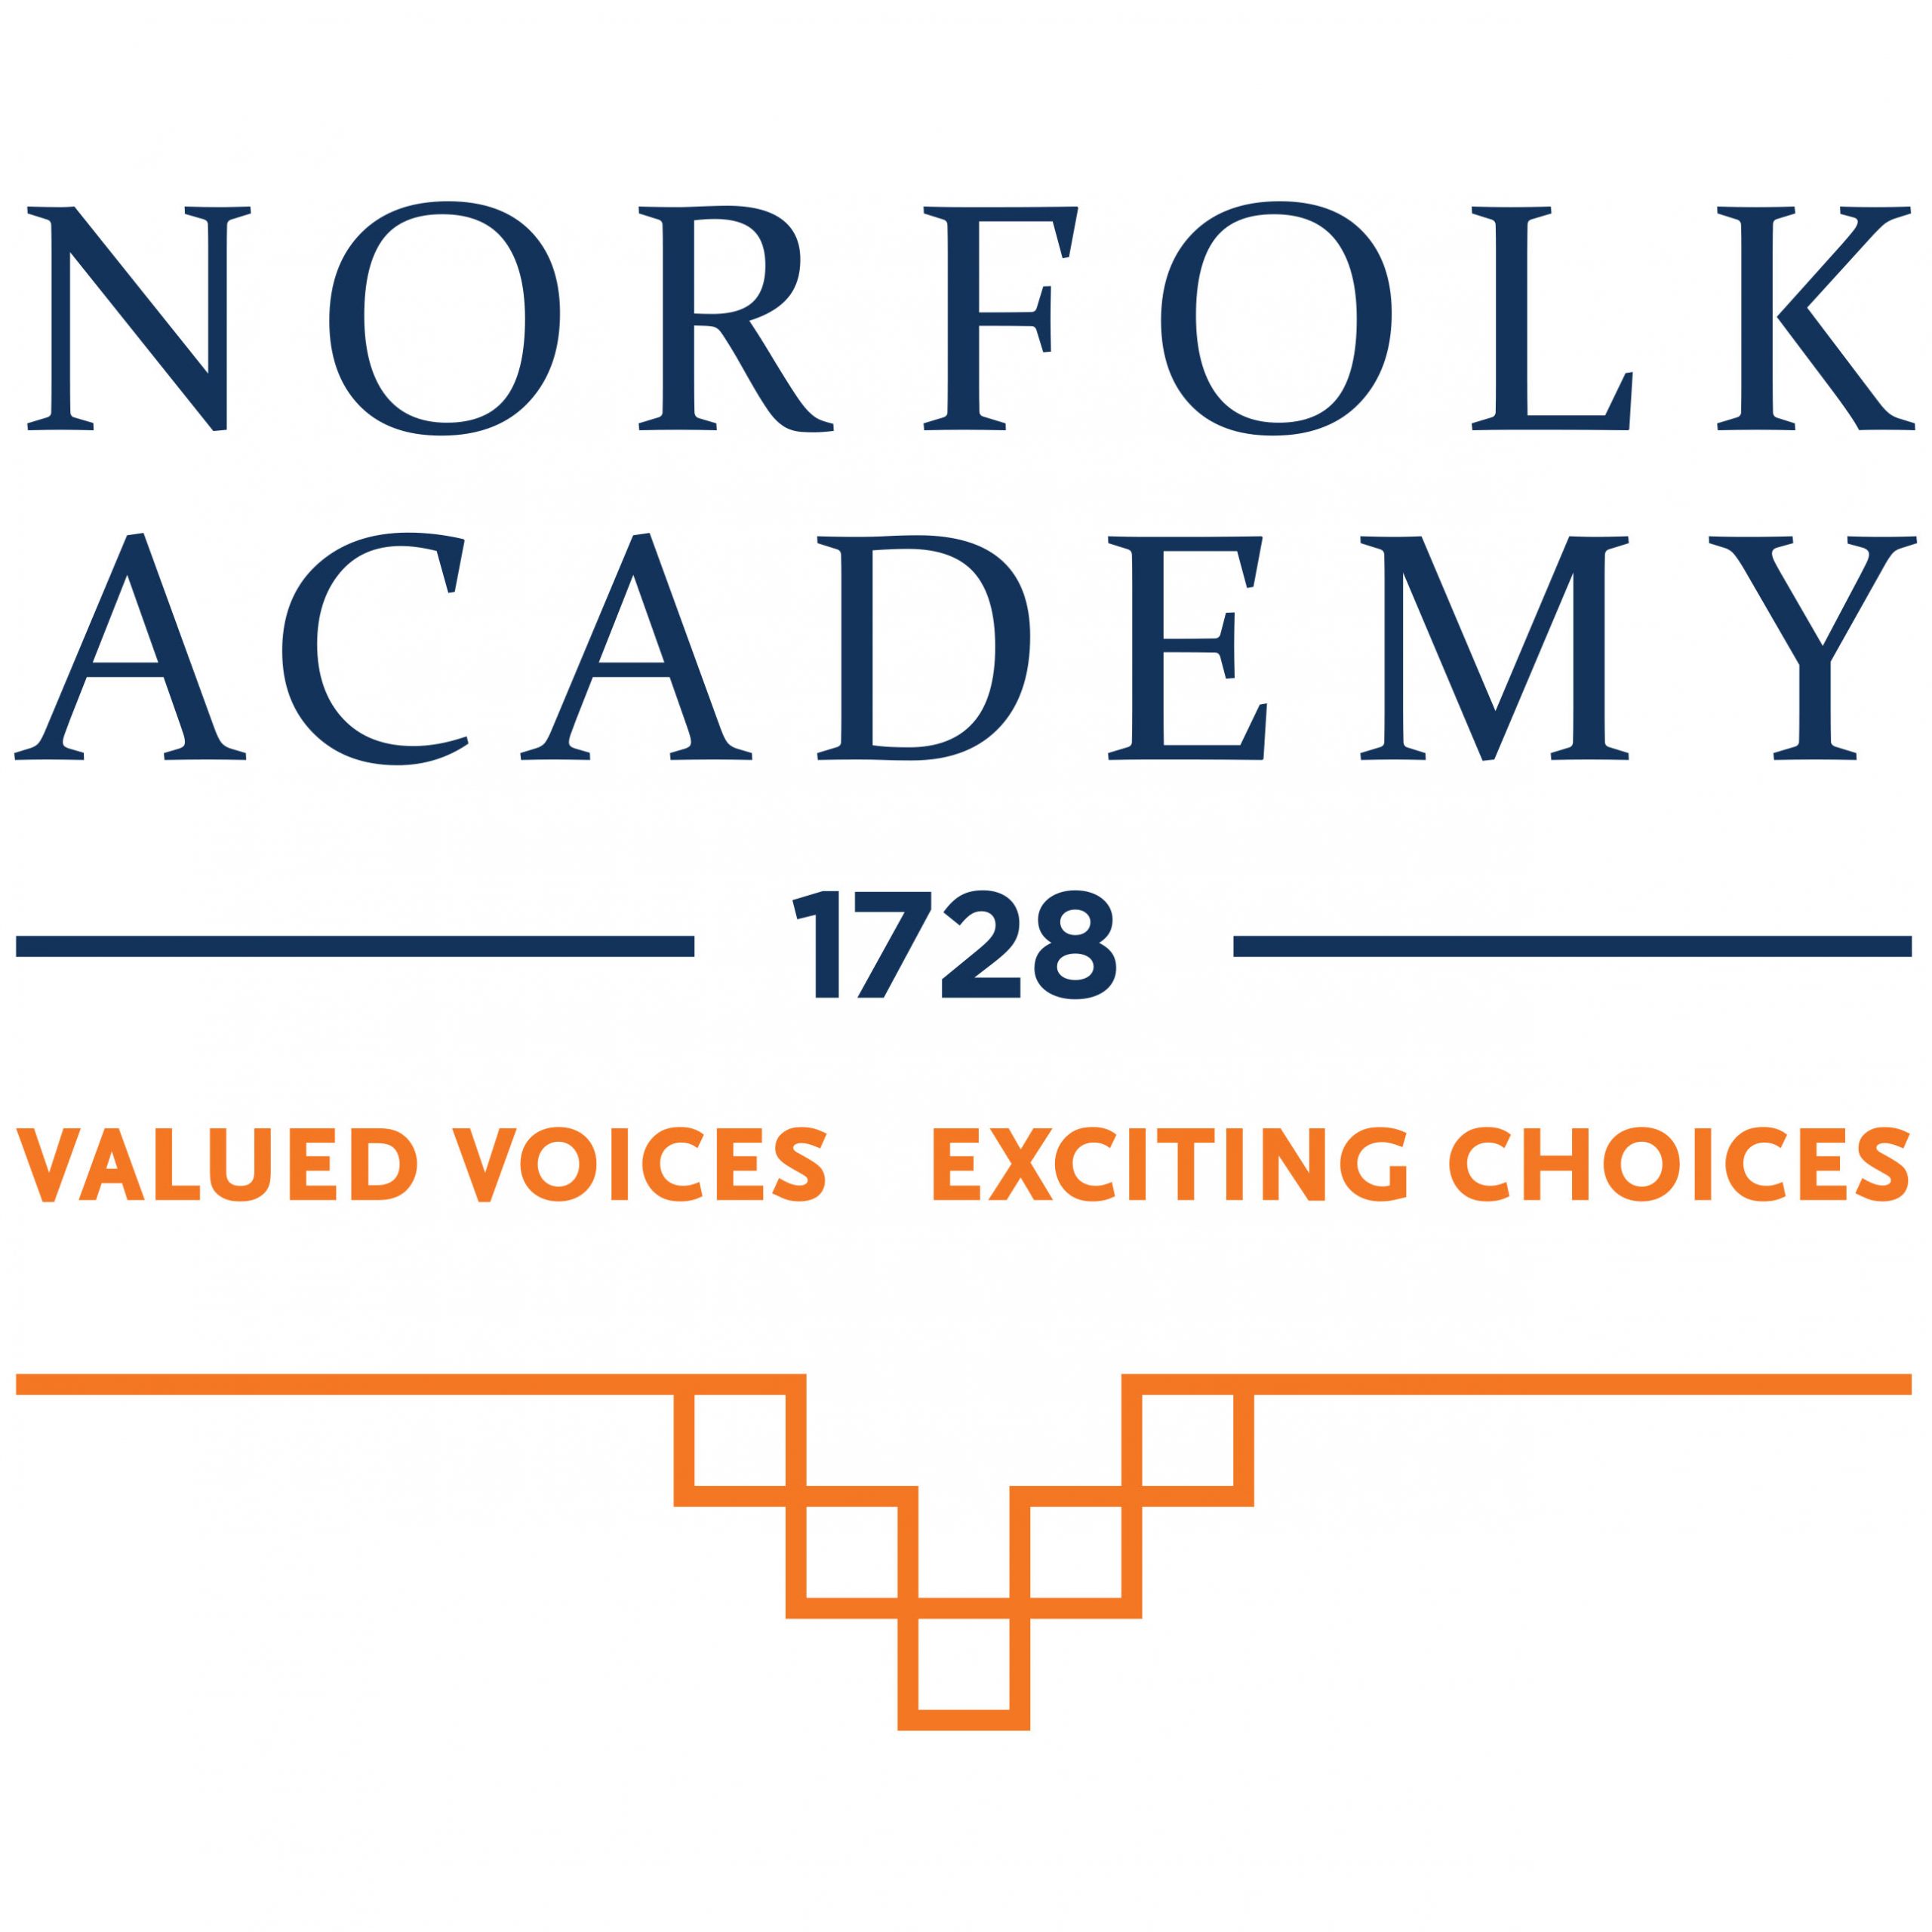 Norfolk Academy